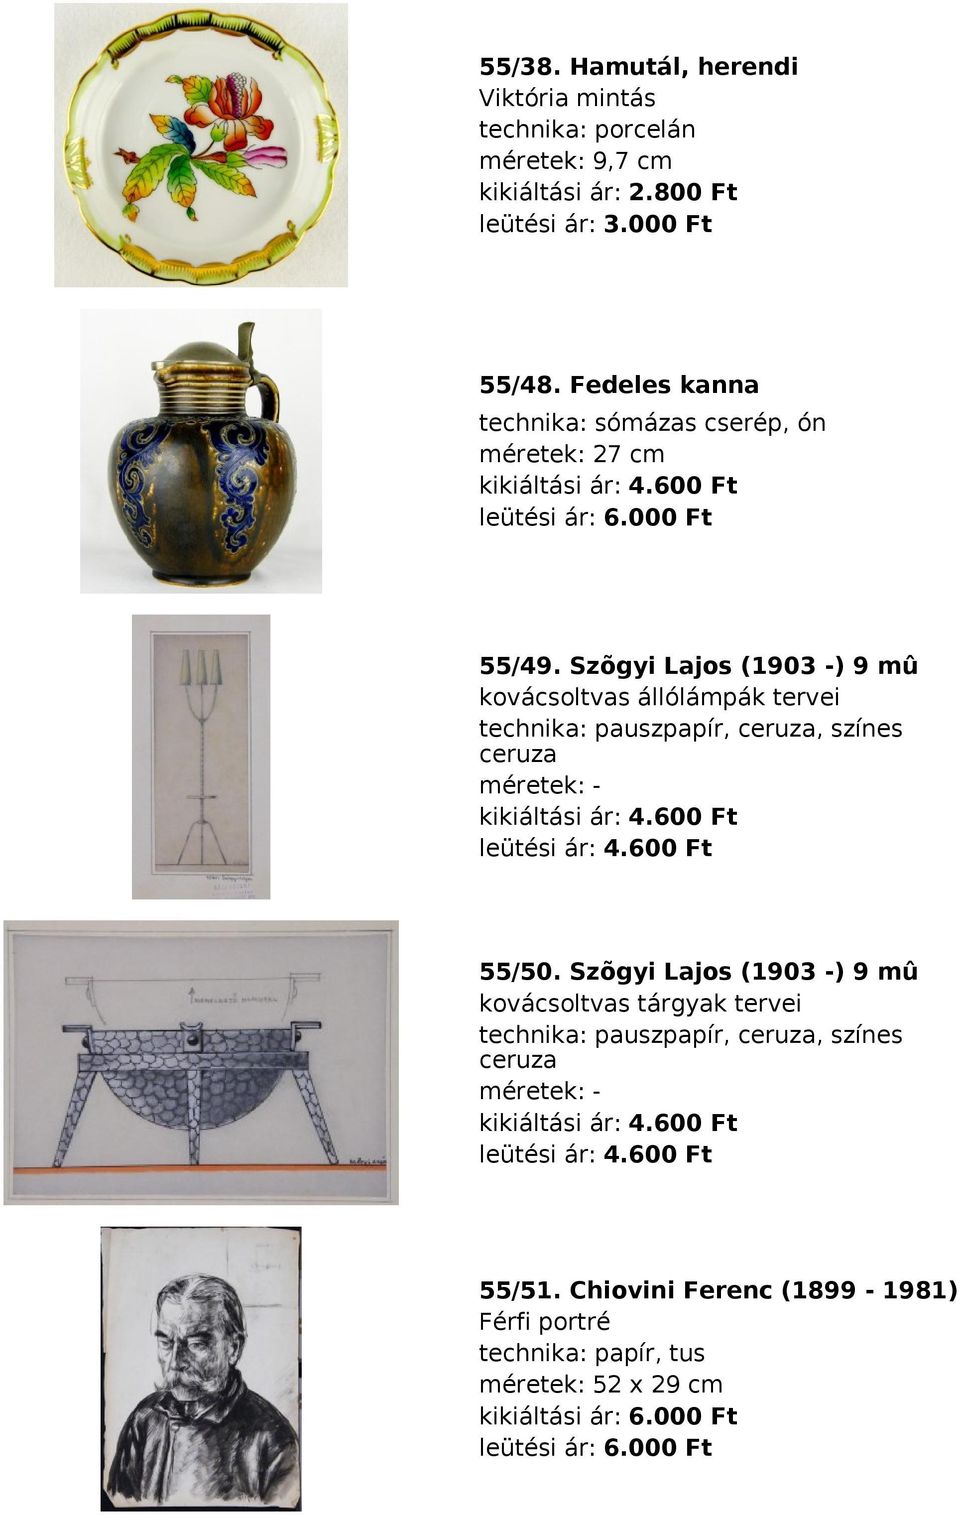 Szõgyi Lajos (1903 -) 9 mû kovácsoltvas állólámpák tervei technika: pauszpapír, ceruza, színes ceruza méretek: kikiáltási ár: 4.600 Ft leütési ár: 4.600 Ft 55/50.